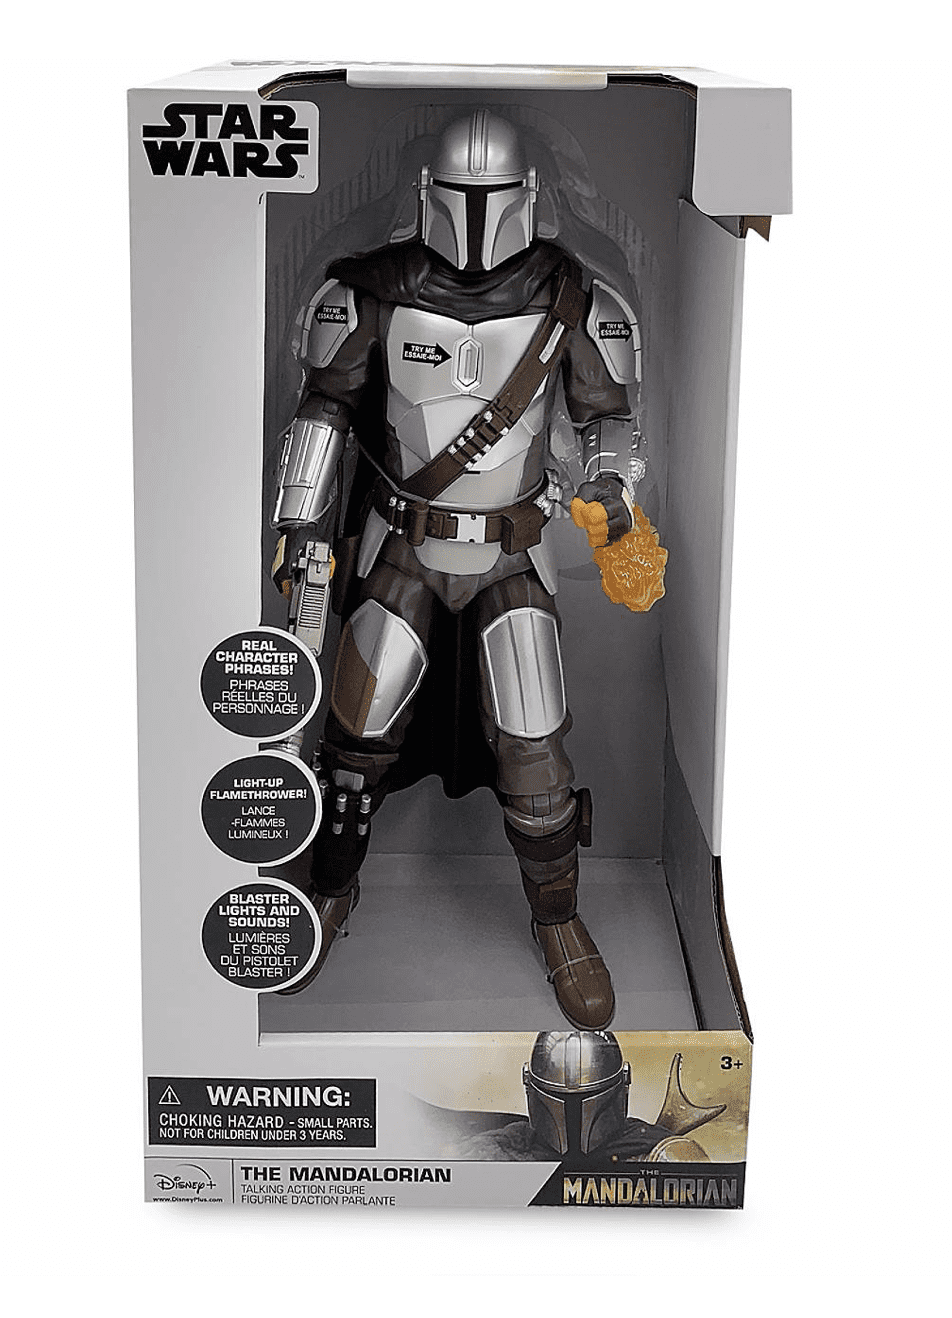 Disney Star Wars Die Mandalorianer Deluxe Figur Play Set Neu mit Box 